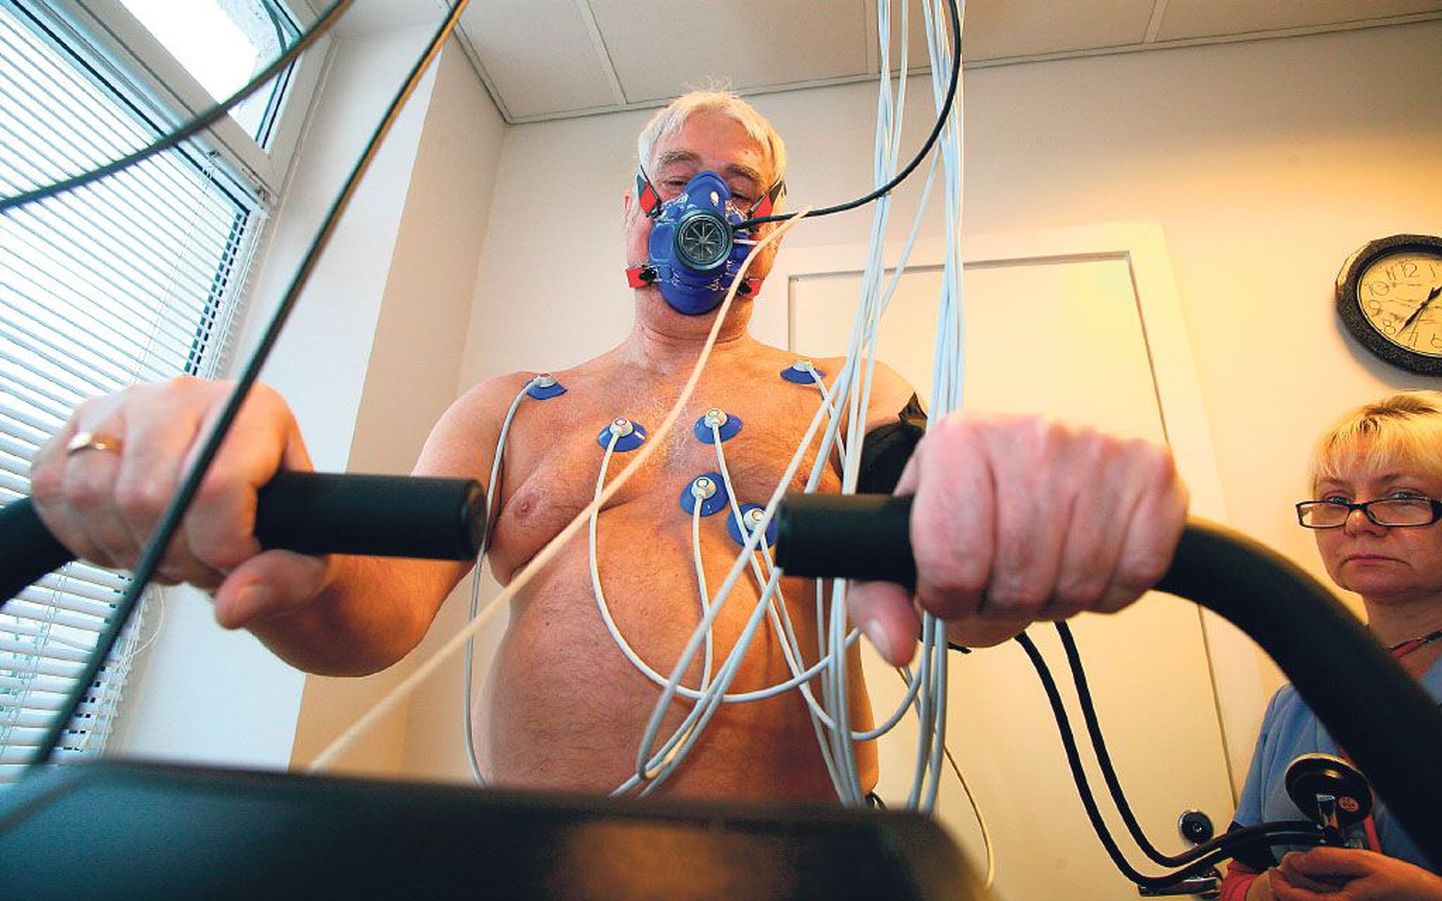 Kardiopulmonaalse hapnikuanalüsaatoriga koormustesti aparatuuri abil oma südame seisundit ja kopsude suutlikkust testija sarnaneb protseduuri ajal suuresti õhuookeani kõrgusi vallutava lenduriga.